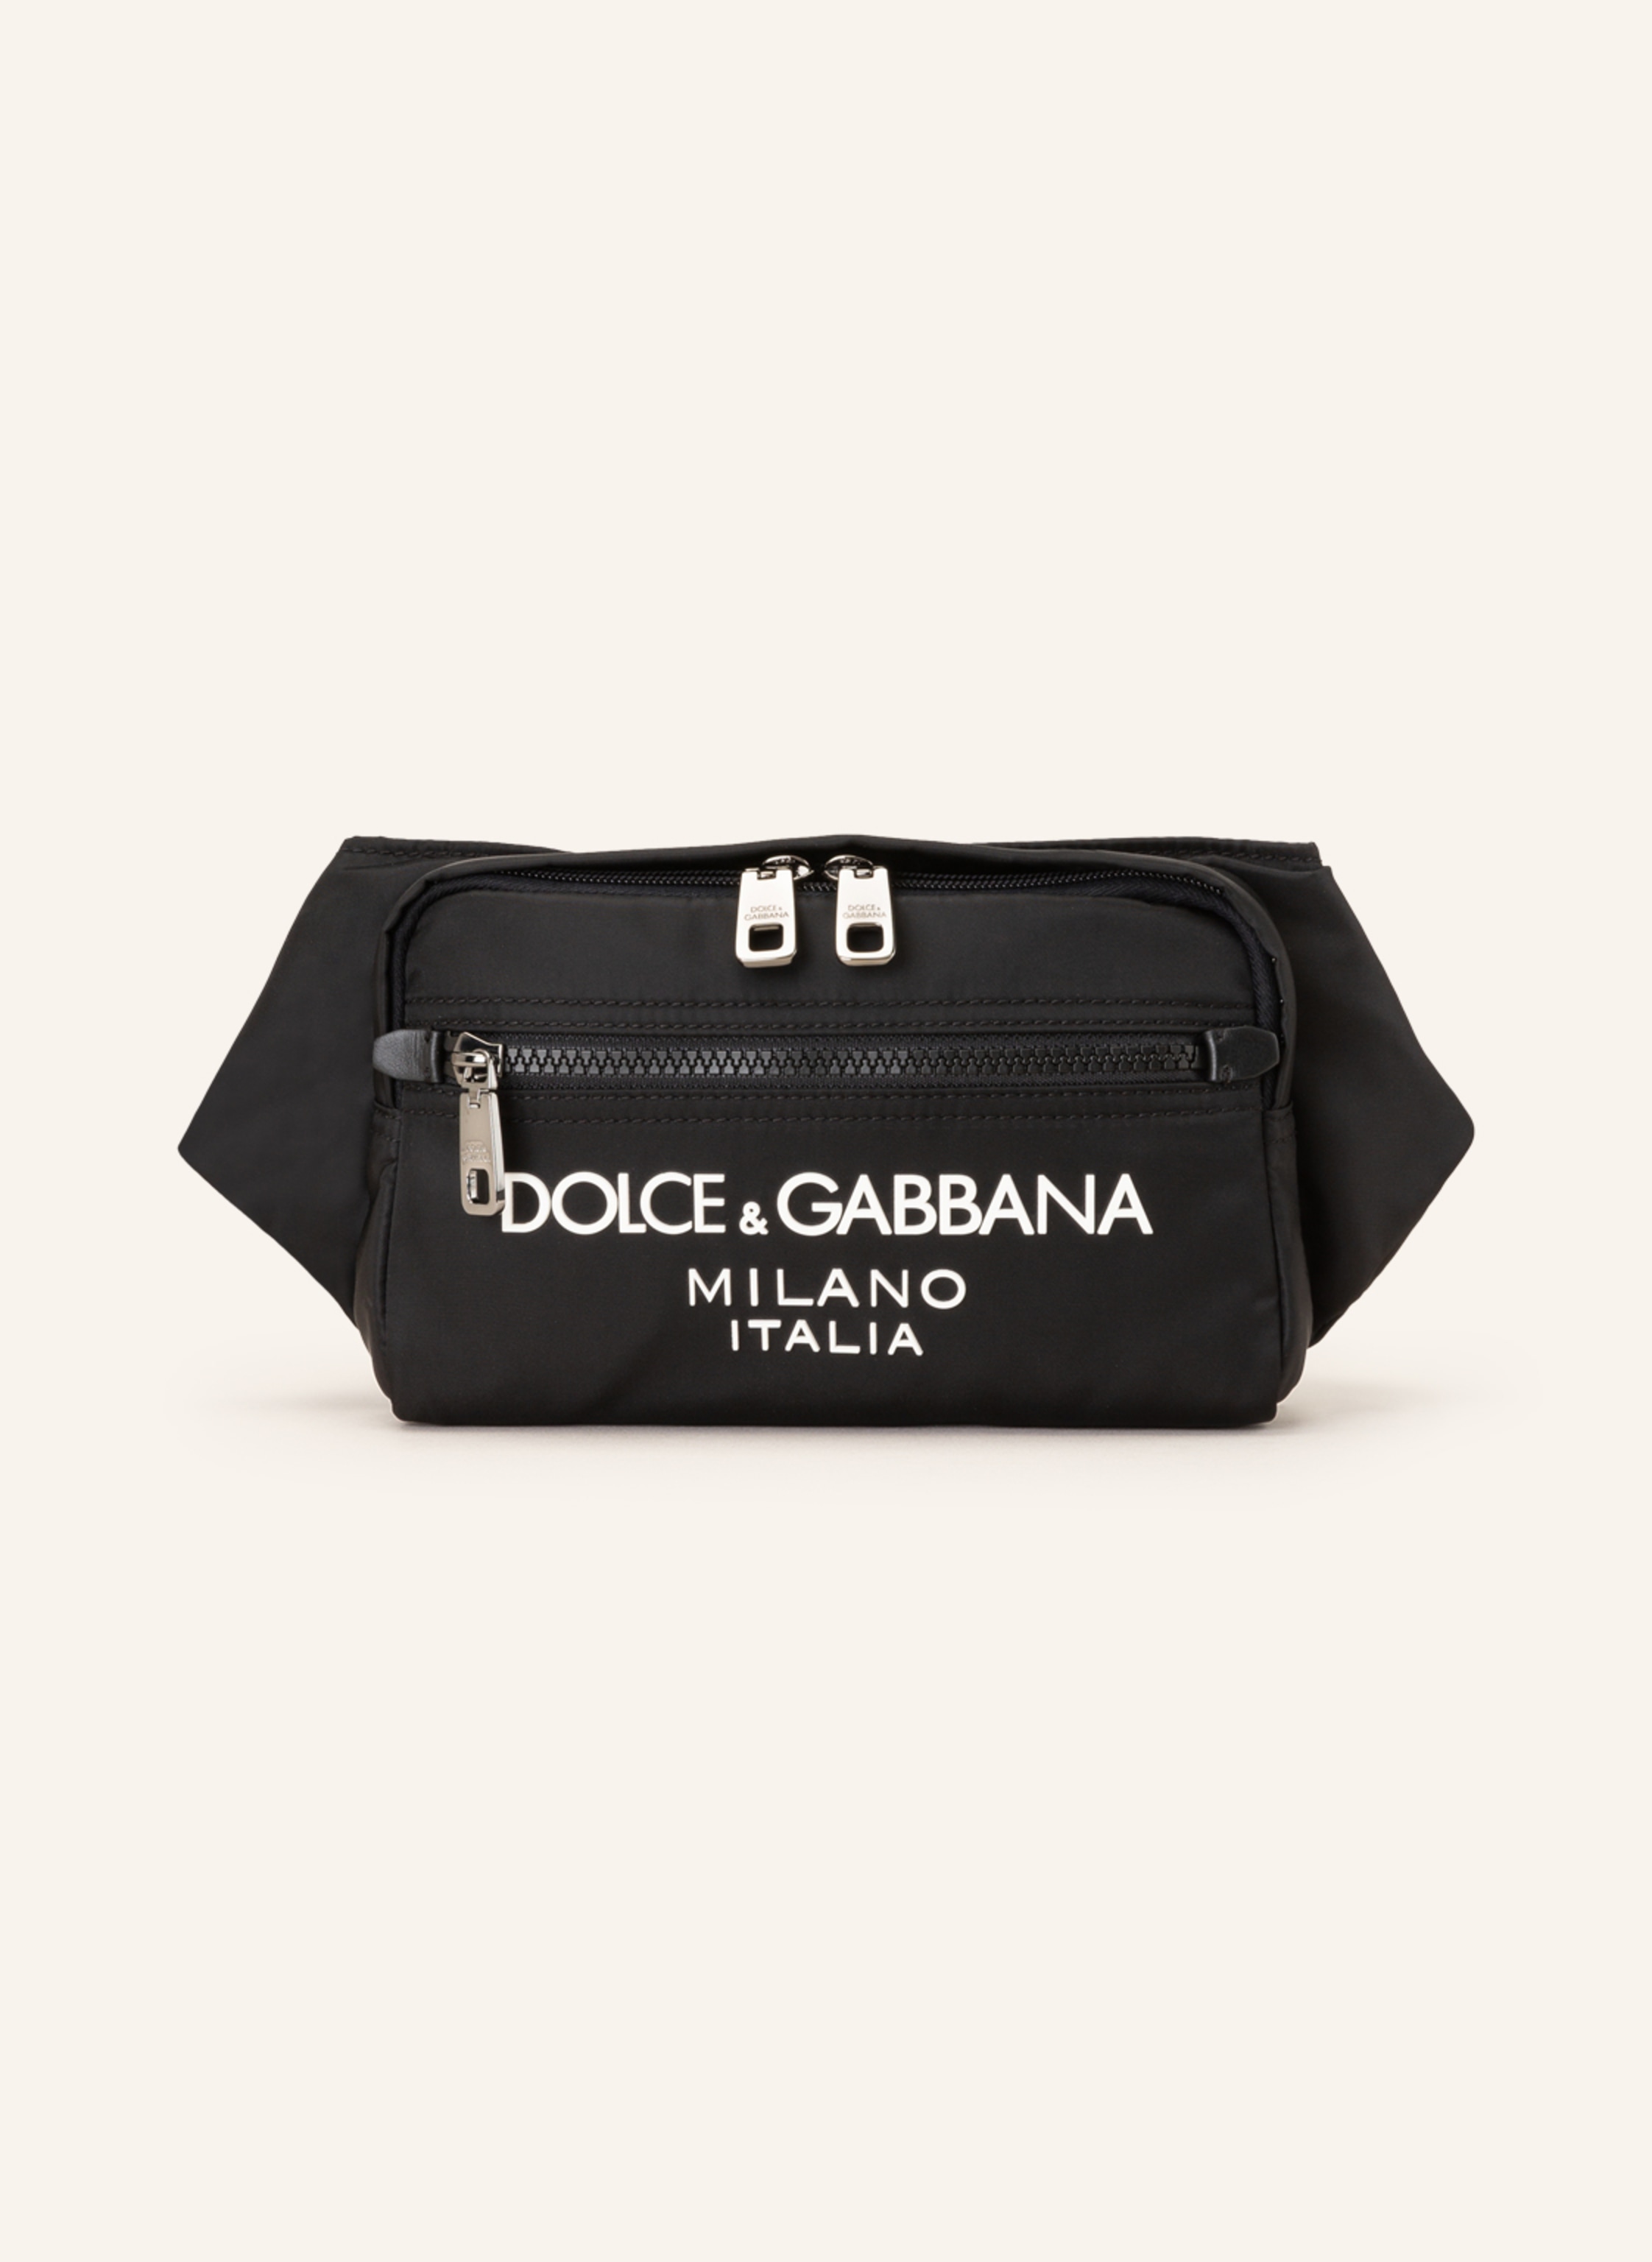 DOLCE & GABBANA Waist bag in black/ white | Breuninger